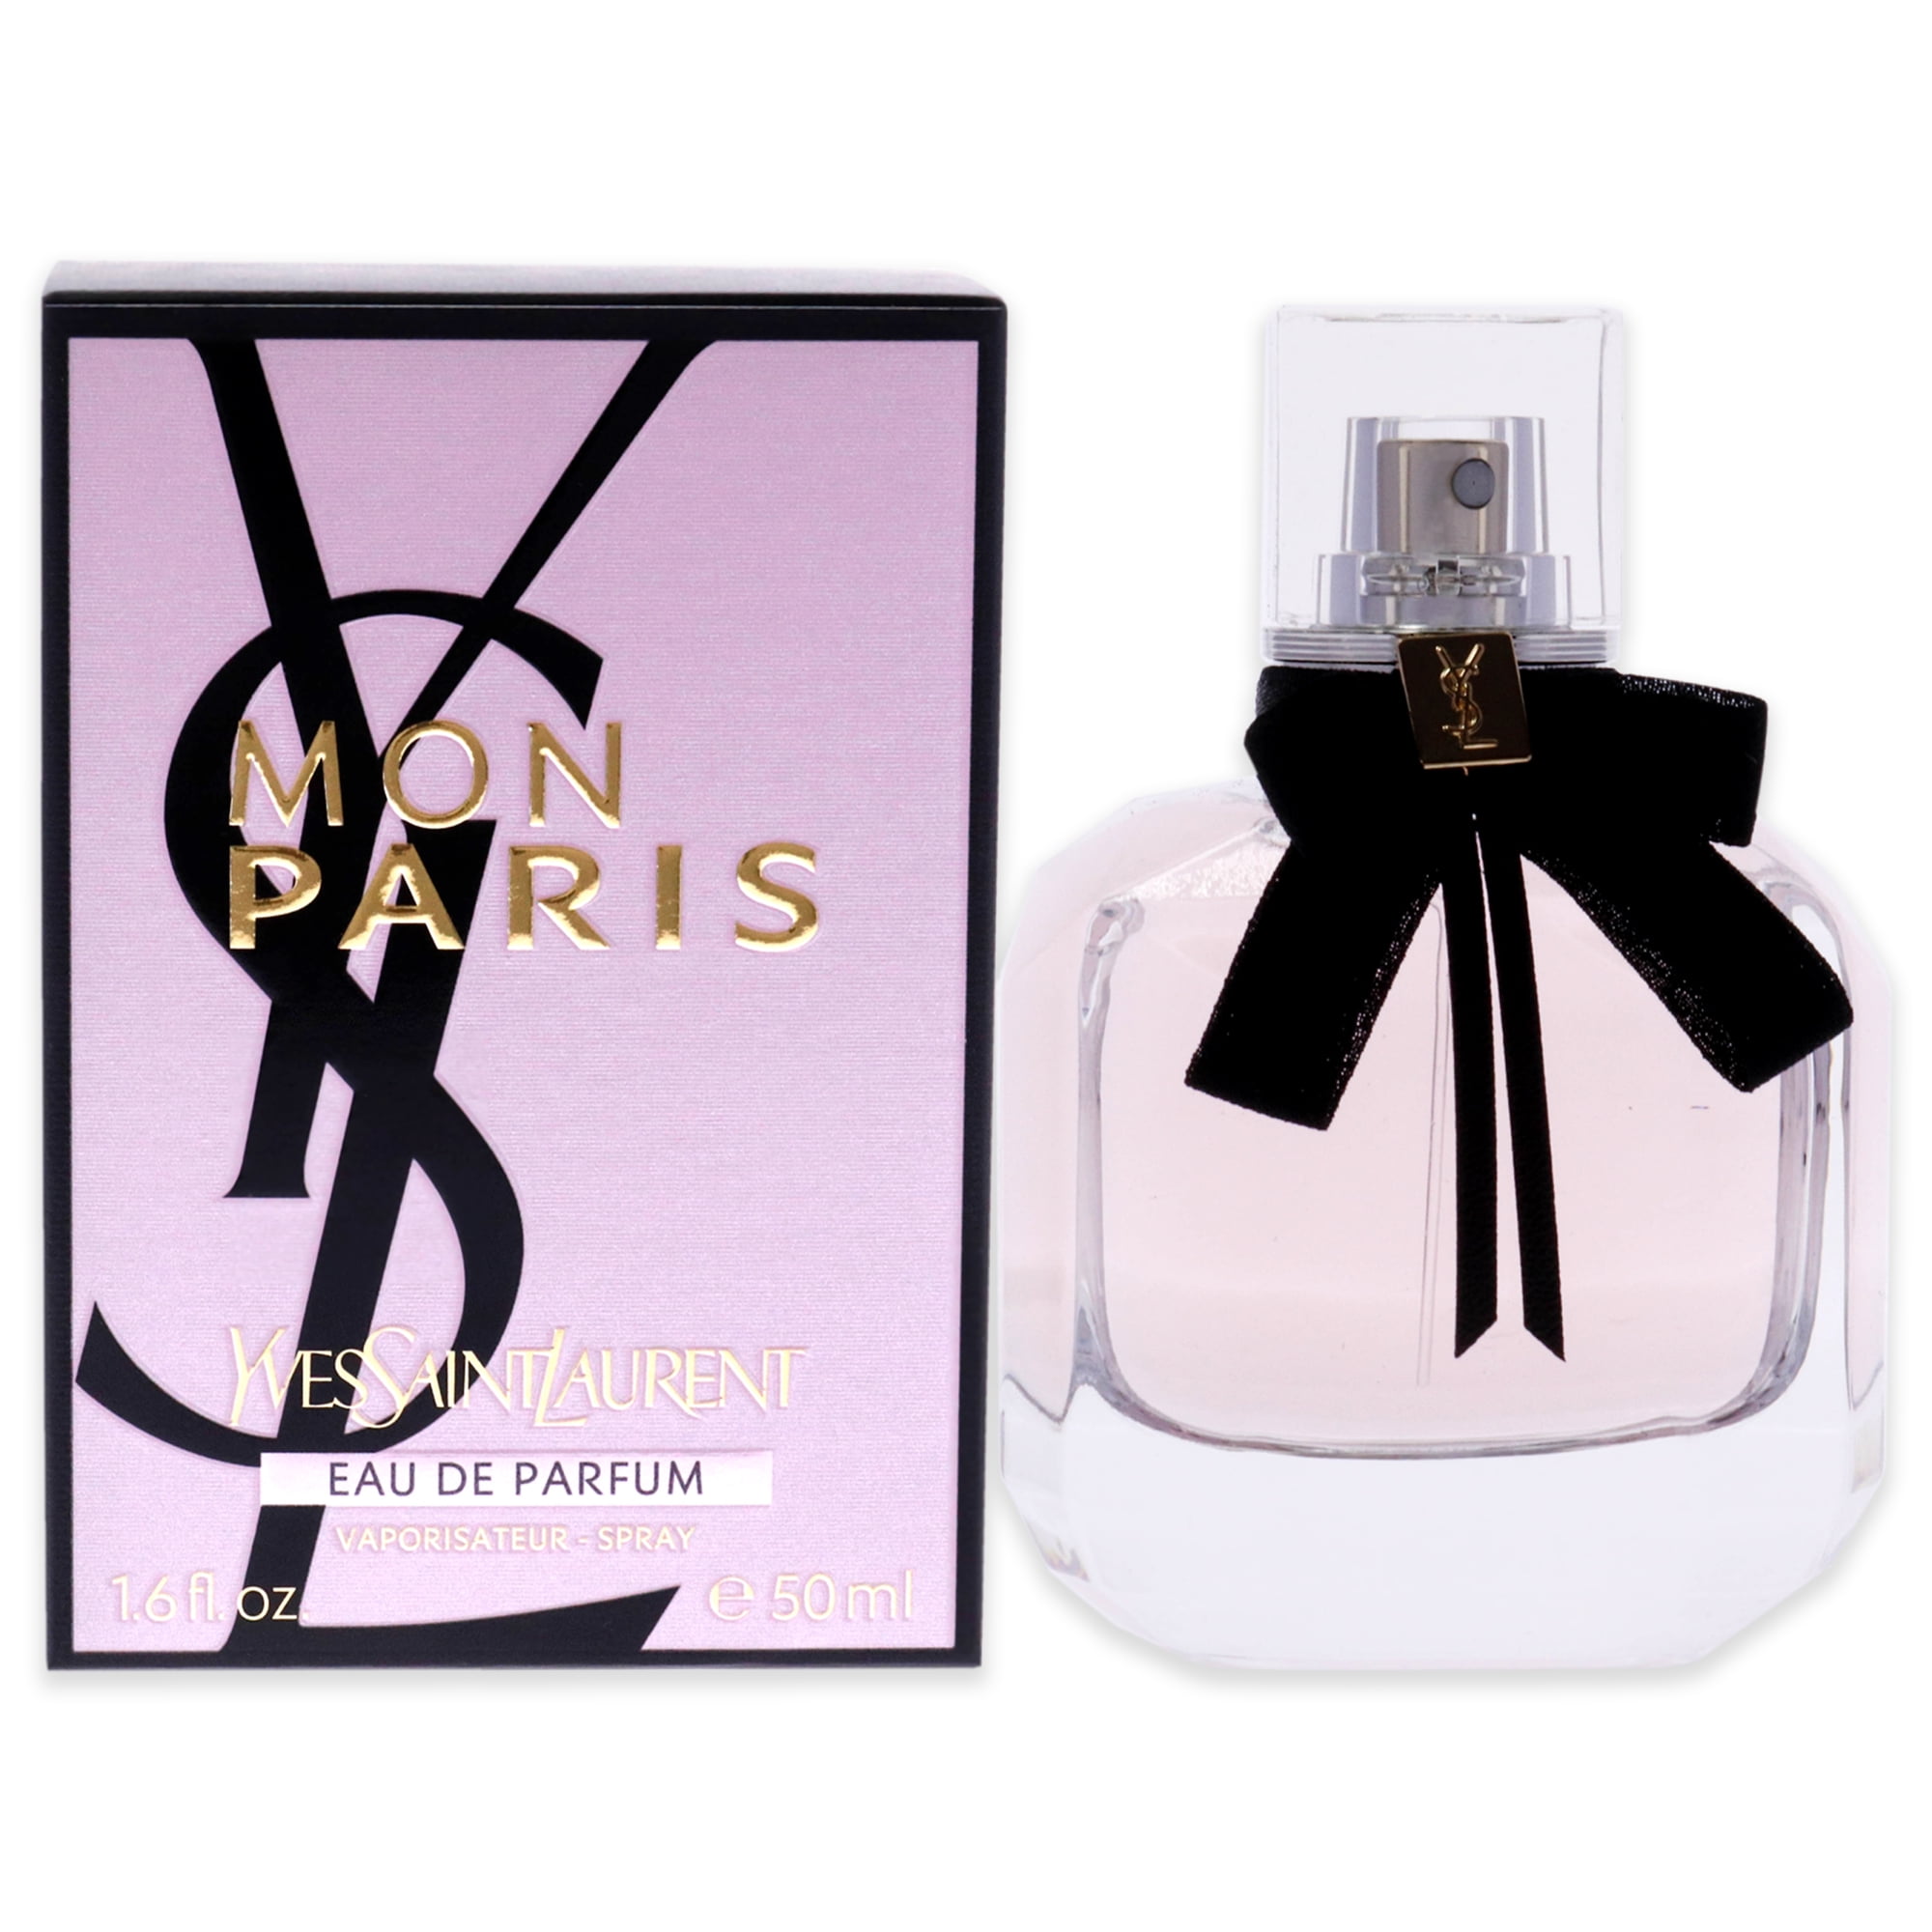 Yves Saint Laurent Mon Paris Eau de Parfum for Women, 1.6 oz | Eau de Parfum